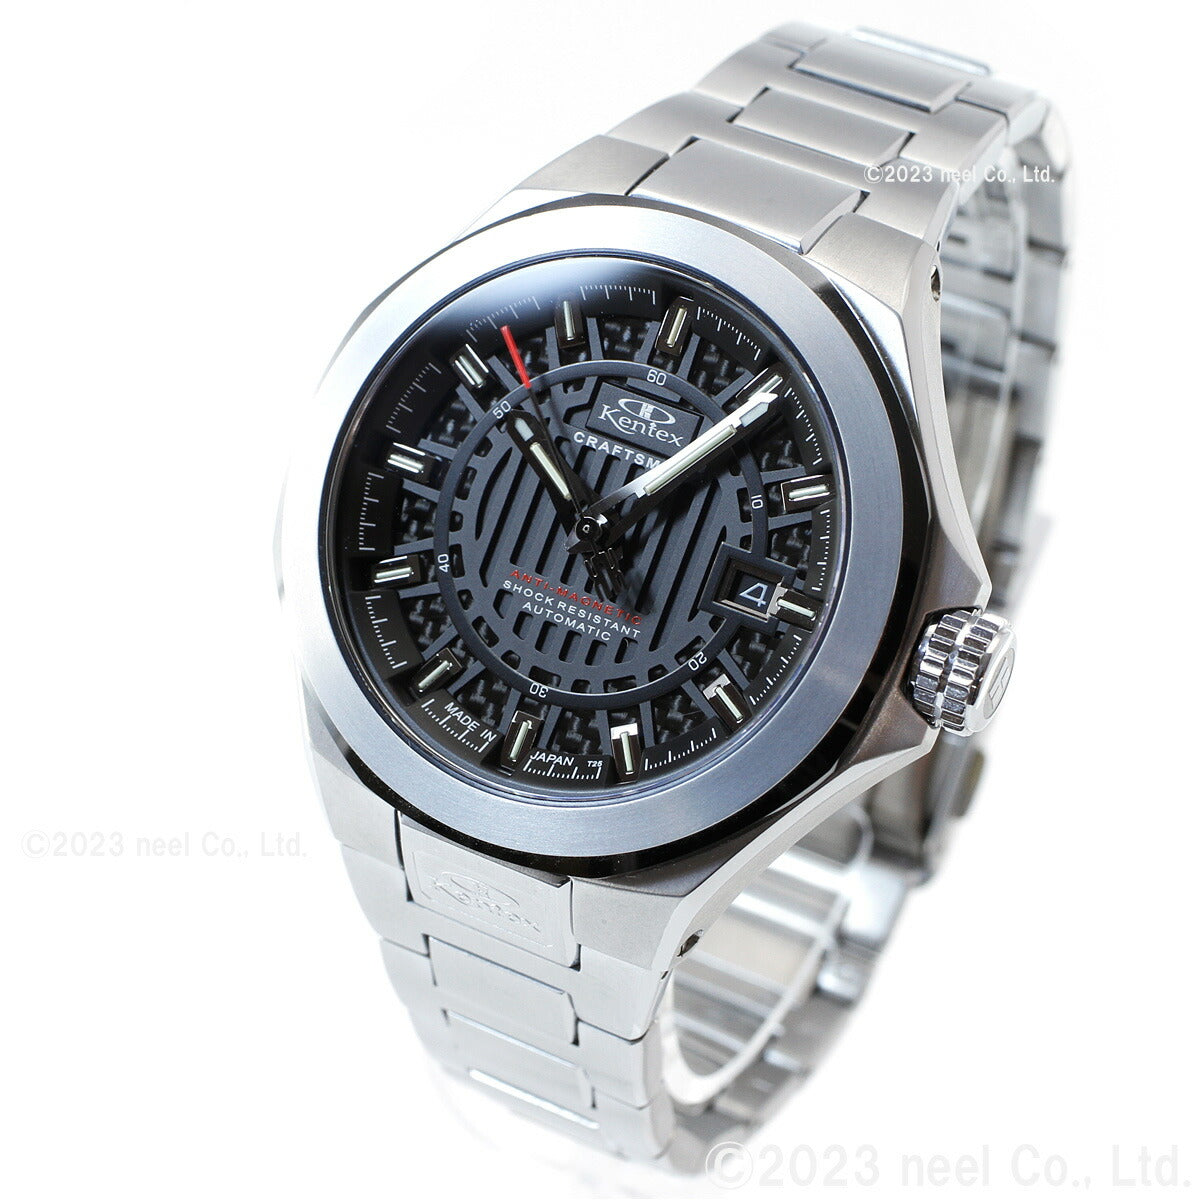 【5月から値上げ！】ケンテックス KENTEX クラフツマン プレステージ 日本製 S526X-6 腕時計 時計 メンズ 自動巻き CRAFTSMAN PRESTIGE